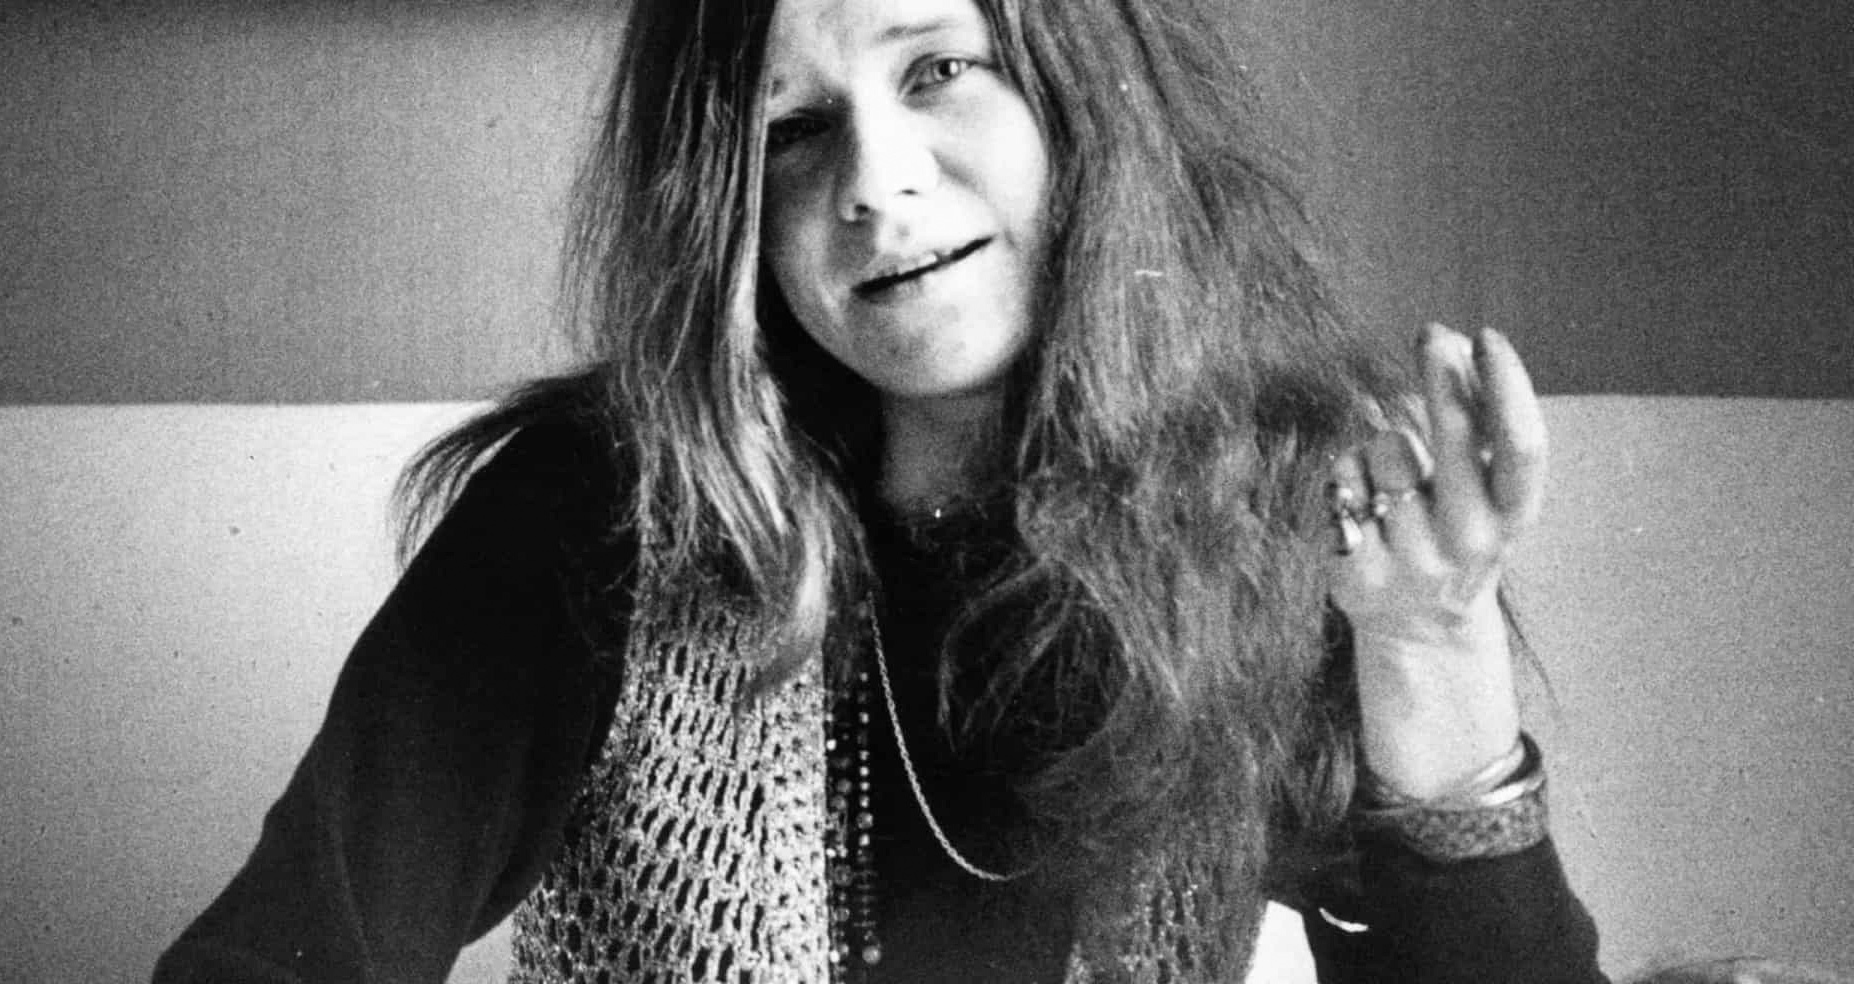 Galeteria Metrópolis - Não tem como falar de rock feminino sem falar da  rainha Janis Joplin. Uma das vozes mais emblemáticas da música internacional.  A cantora nasceu em 1943 em Port Arthur.